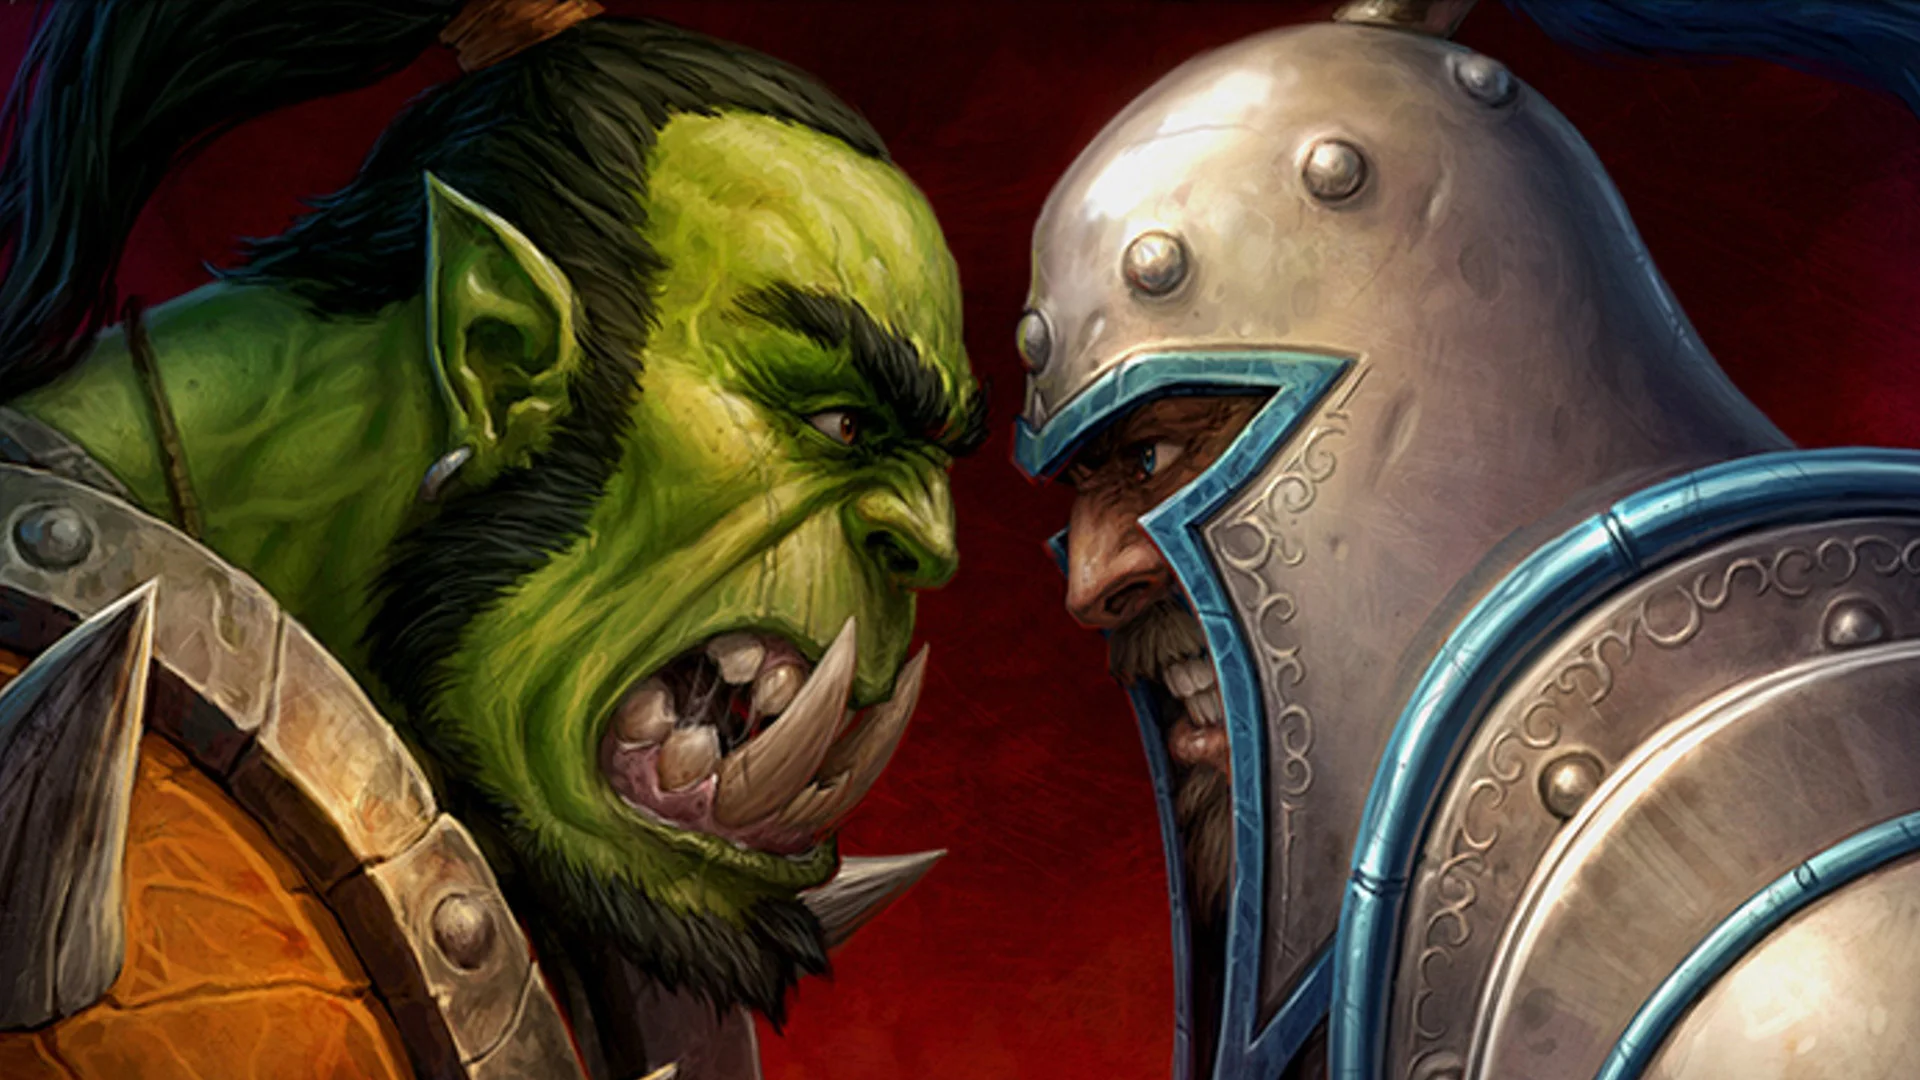 В этом году у Warcraft двойной юбилей — 15 лет исполняется World of Warcraft, а вся франшиза в целом празднует внушительные 25 лет. В честь этого события я съездил к Blizzard в Ирвайн и посетили саммит, посвященный юбилею серии и ее дальнейшему развитию. Там я пообщался не только с самыми увлеченными Warcraft-фанатами, но и с разработчиками, в том числе и с теми, кто принимал участие в разработке оригинальной Warcraft: Orcs &amp; Humans или присоединился к команде вскоре после ее релиза! Как тут удержаться и не выудить пару исторических фактов?